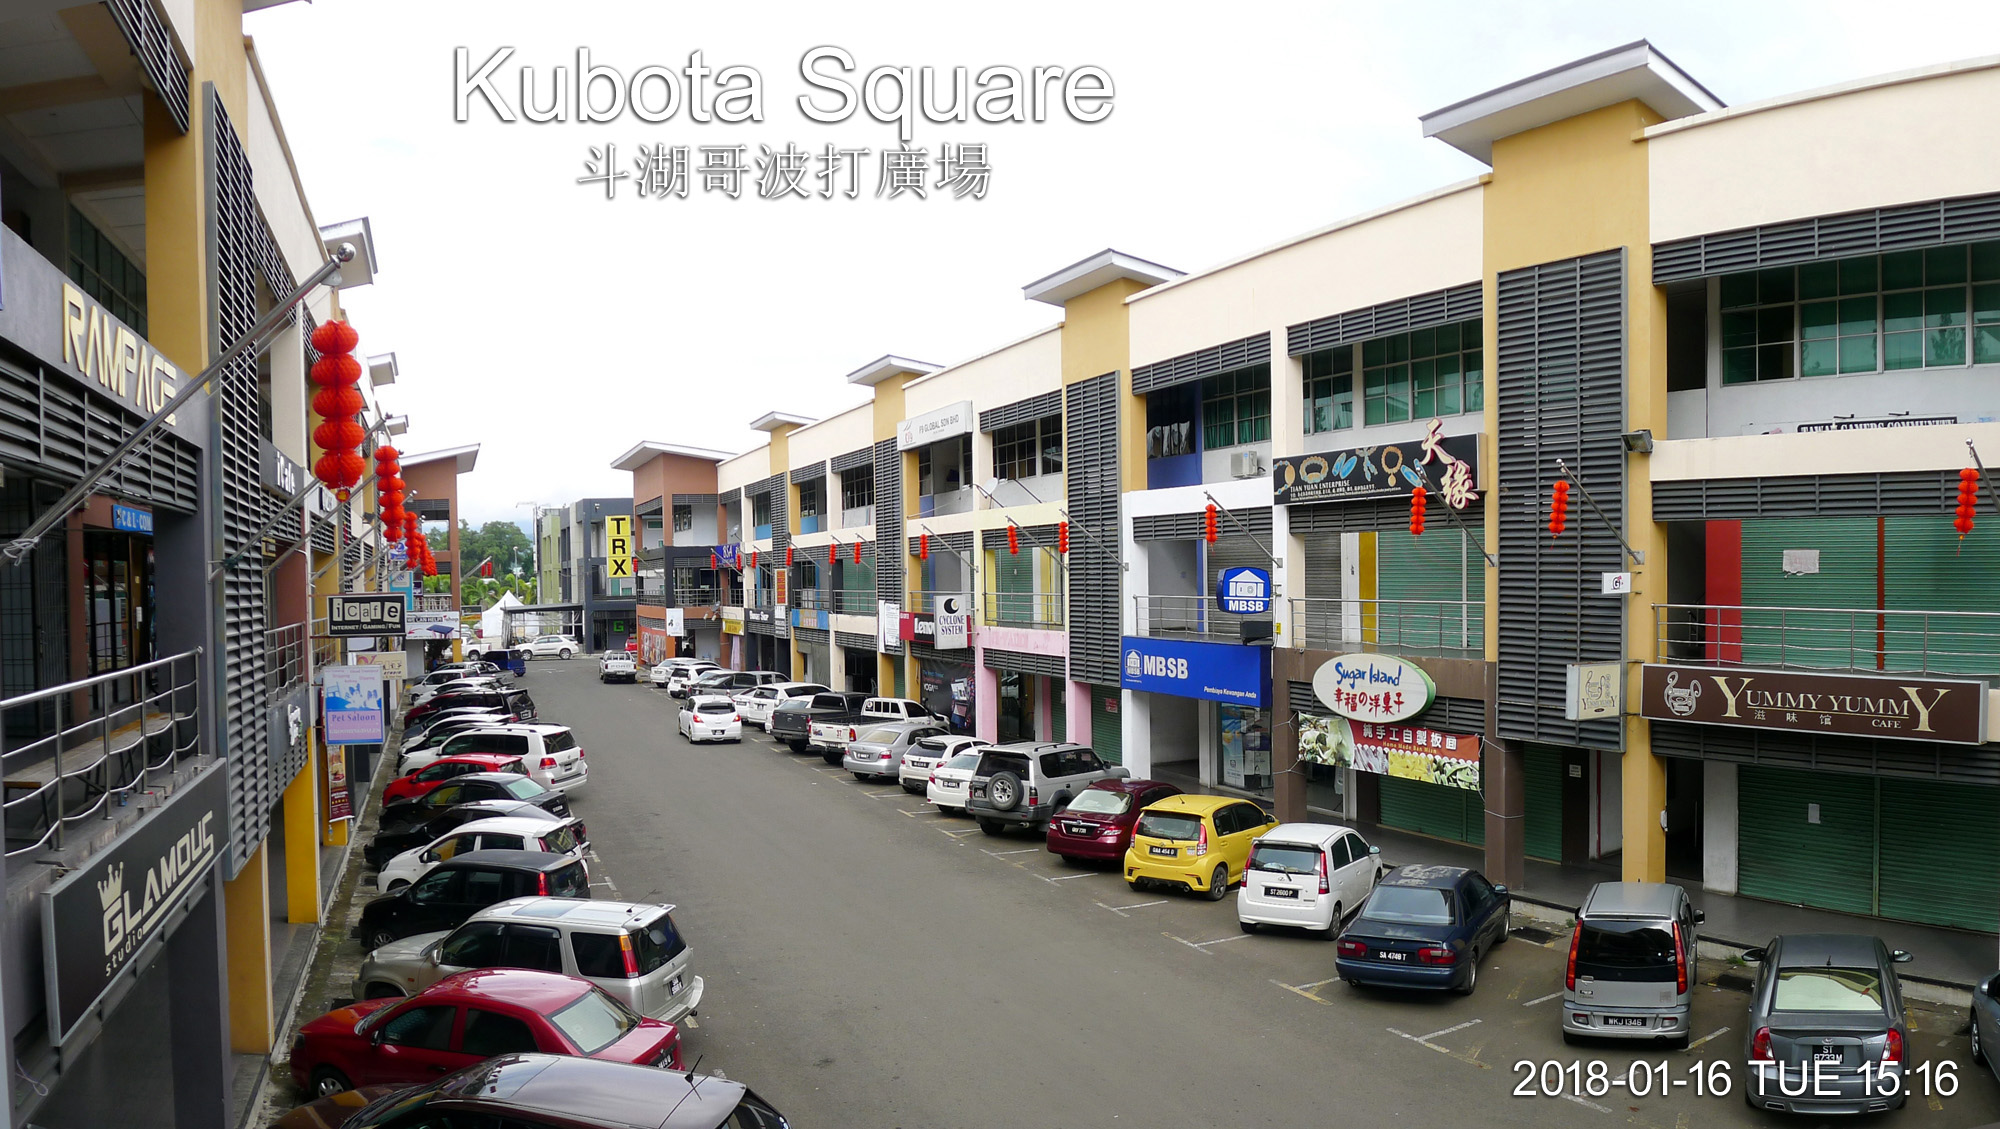 Kubota Square, Tawau 斗湖哥波打廣場